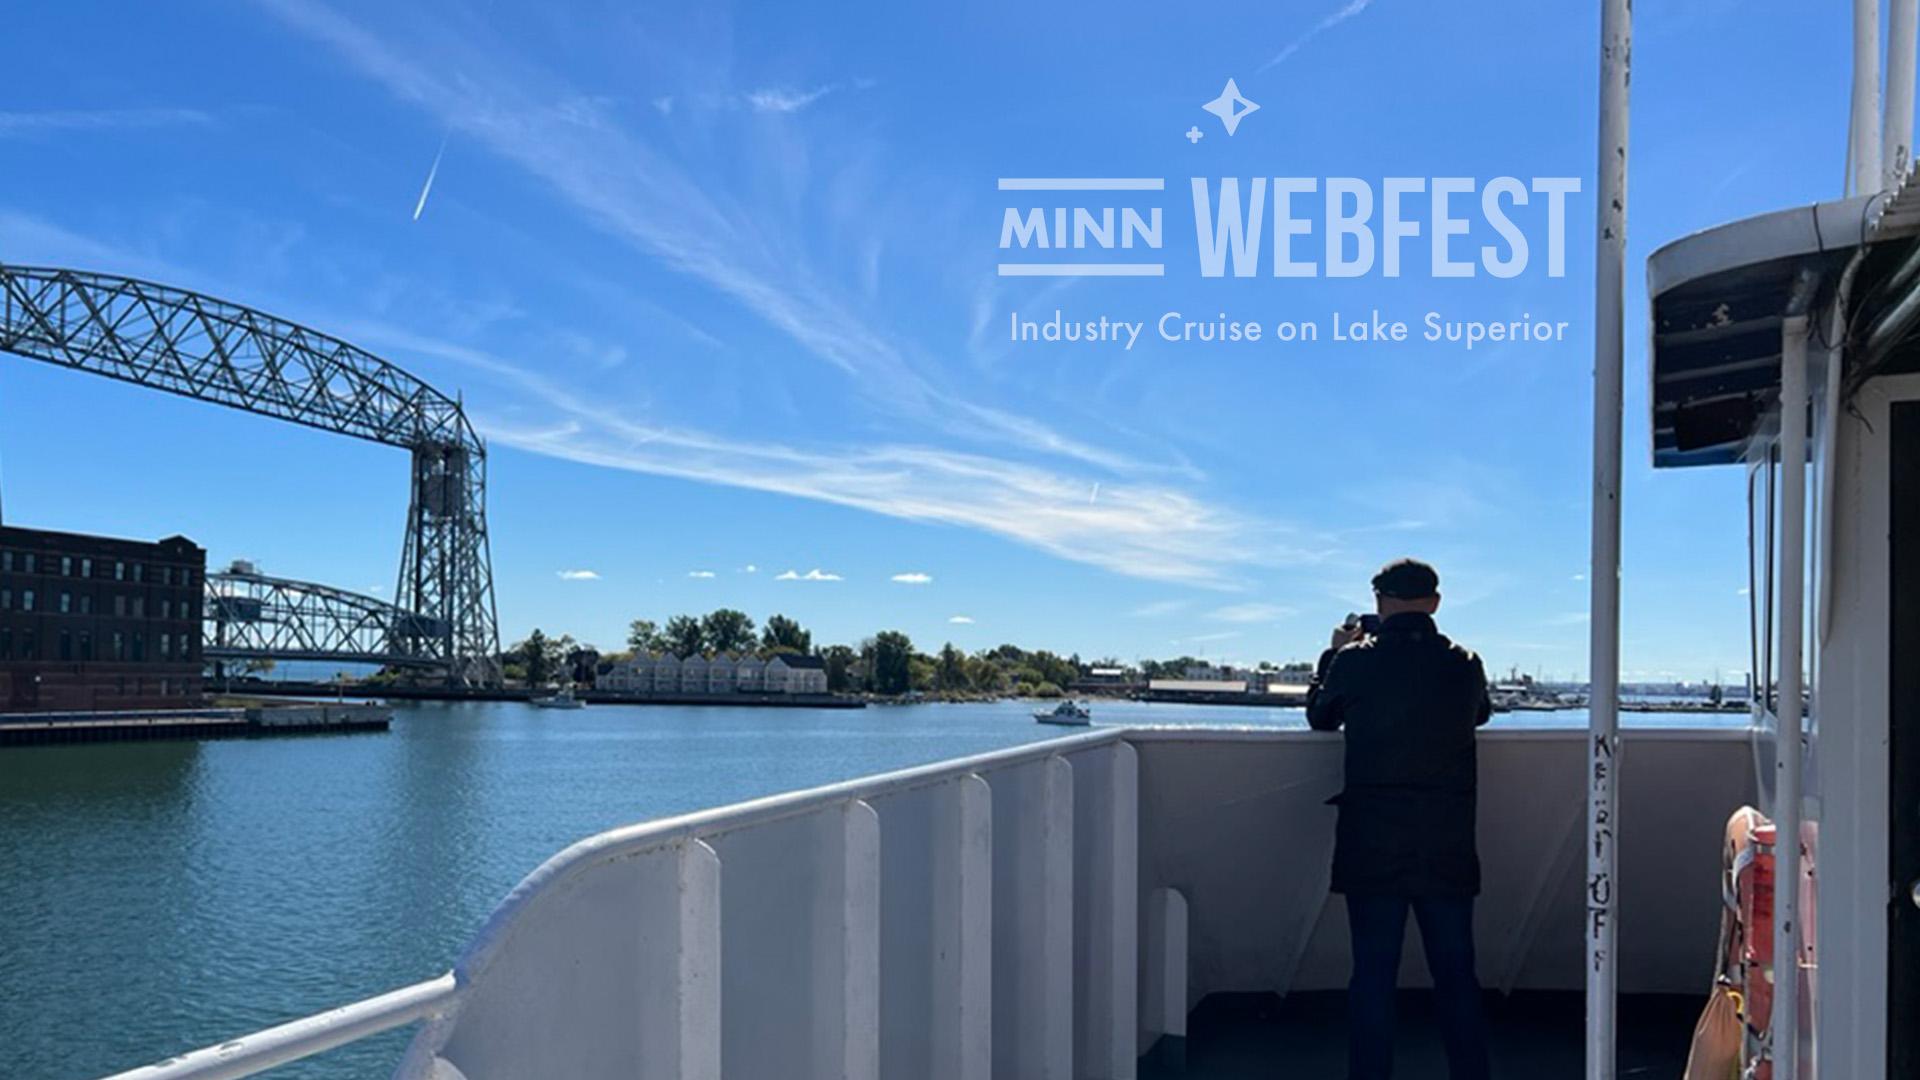 Industry Cruise on Lake Superior